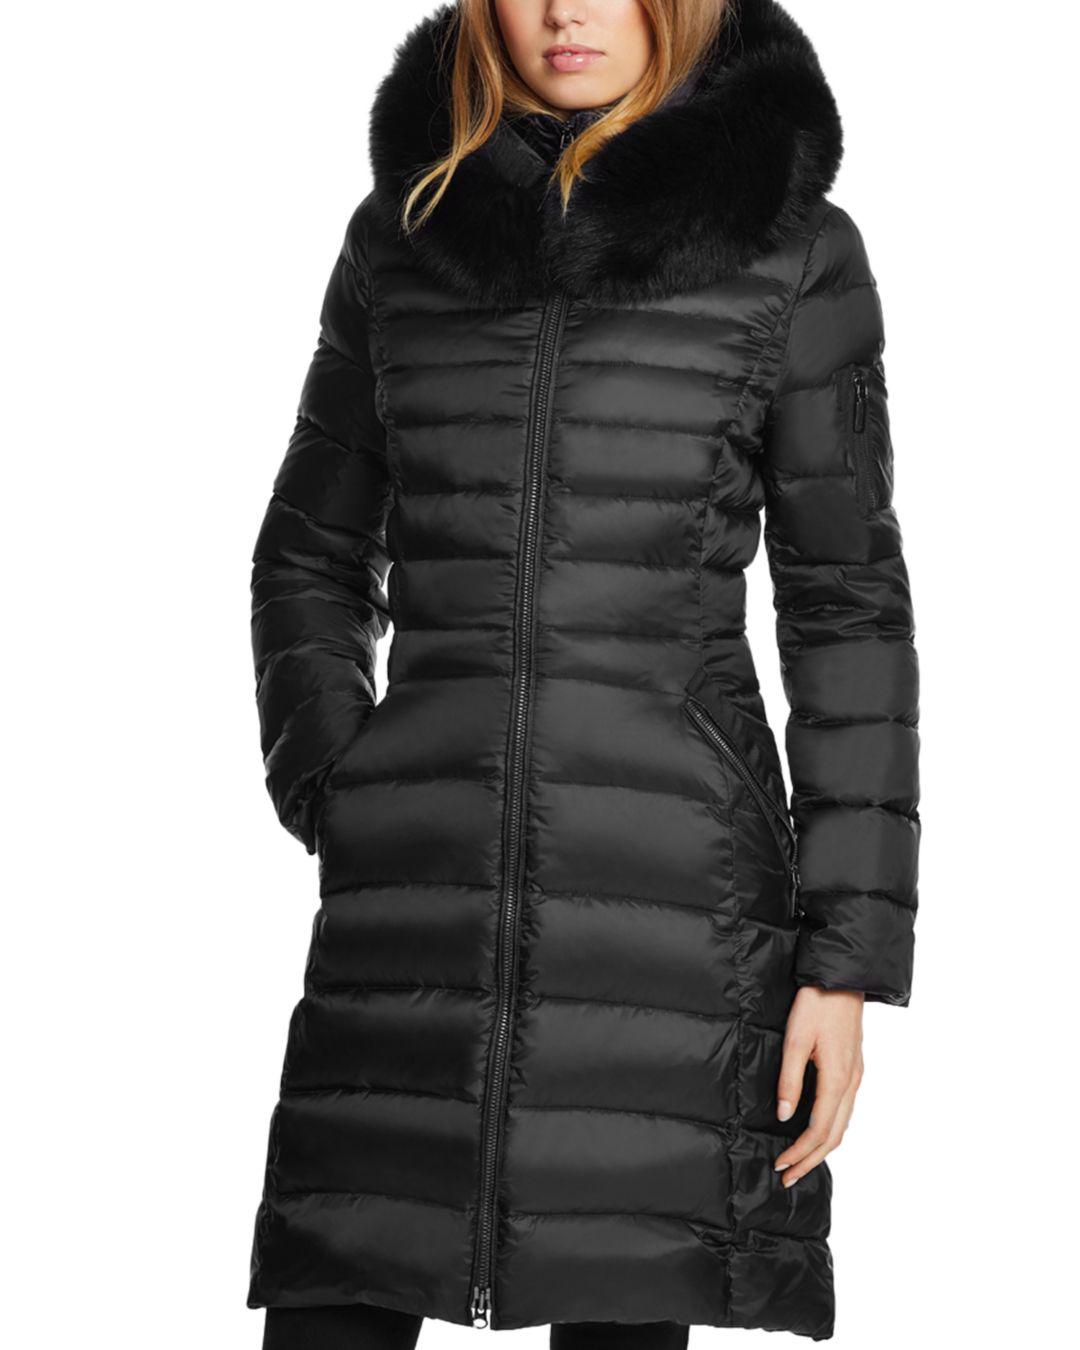 Dawn Levy Milly Fur Trim Puffer Coat in Black - Lyst